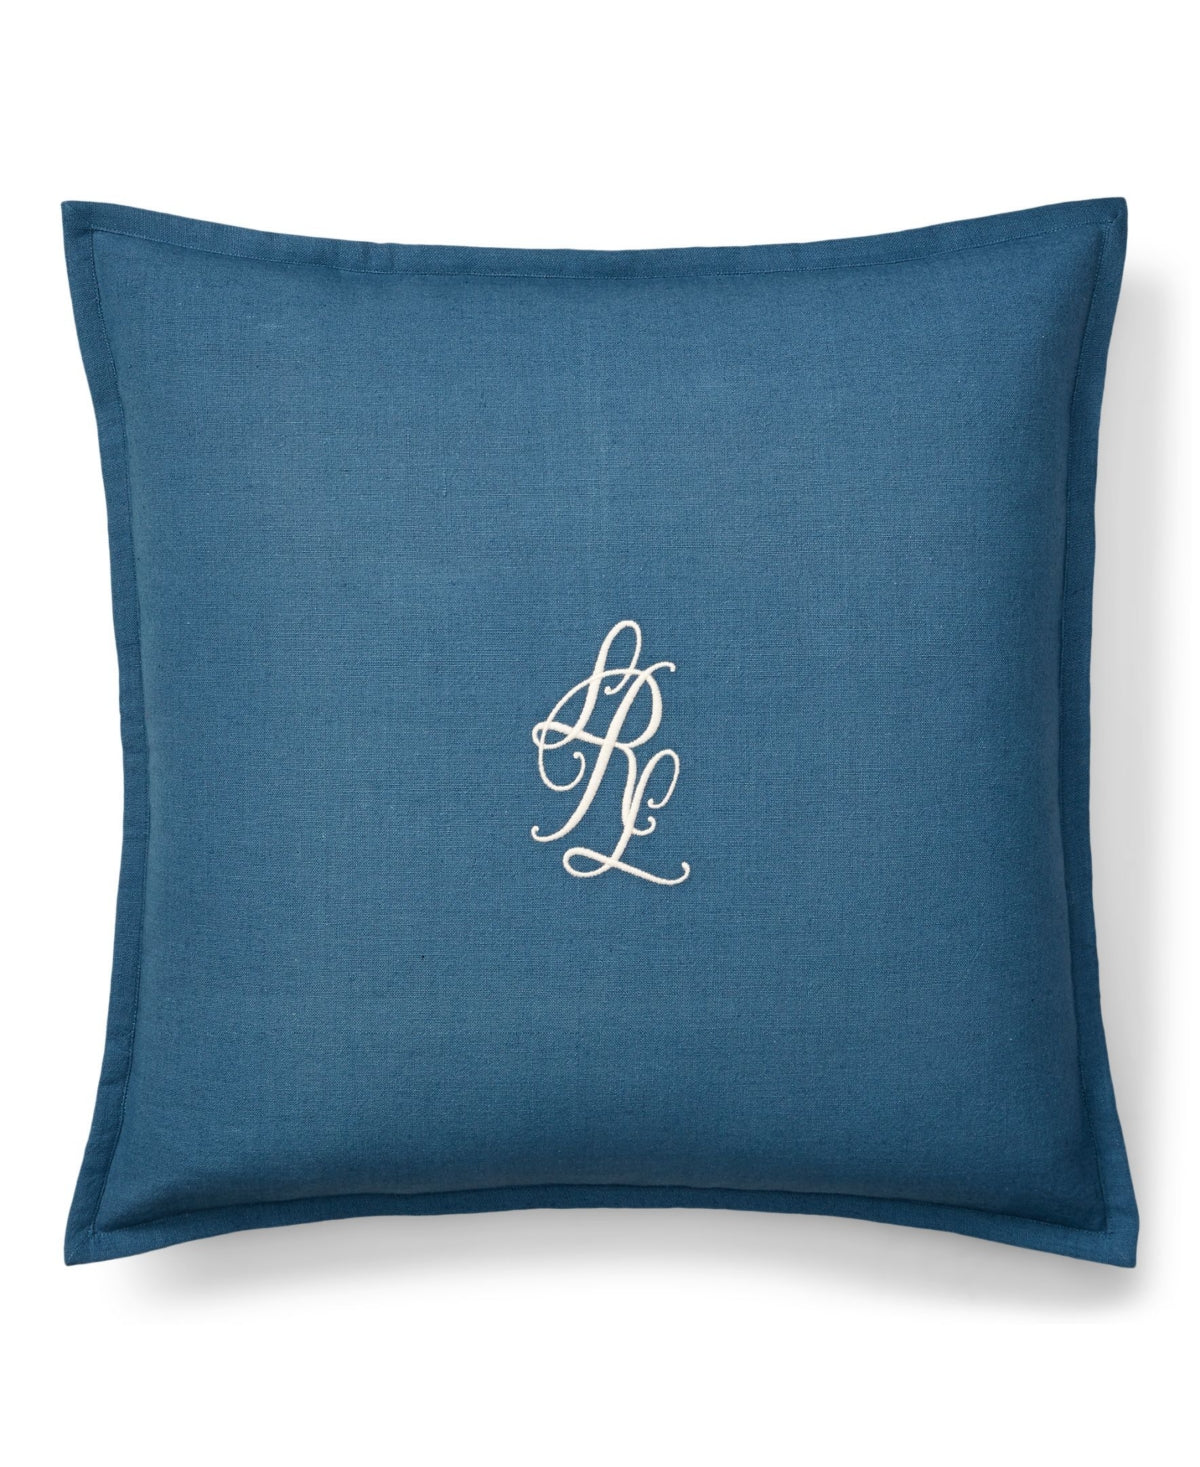 Lauren Ralph Lauren Julianne Monogram Decorative Pillow, 18" x 18" Bedding